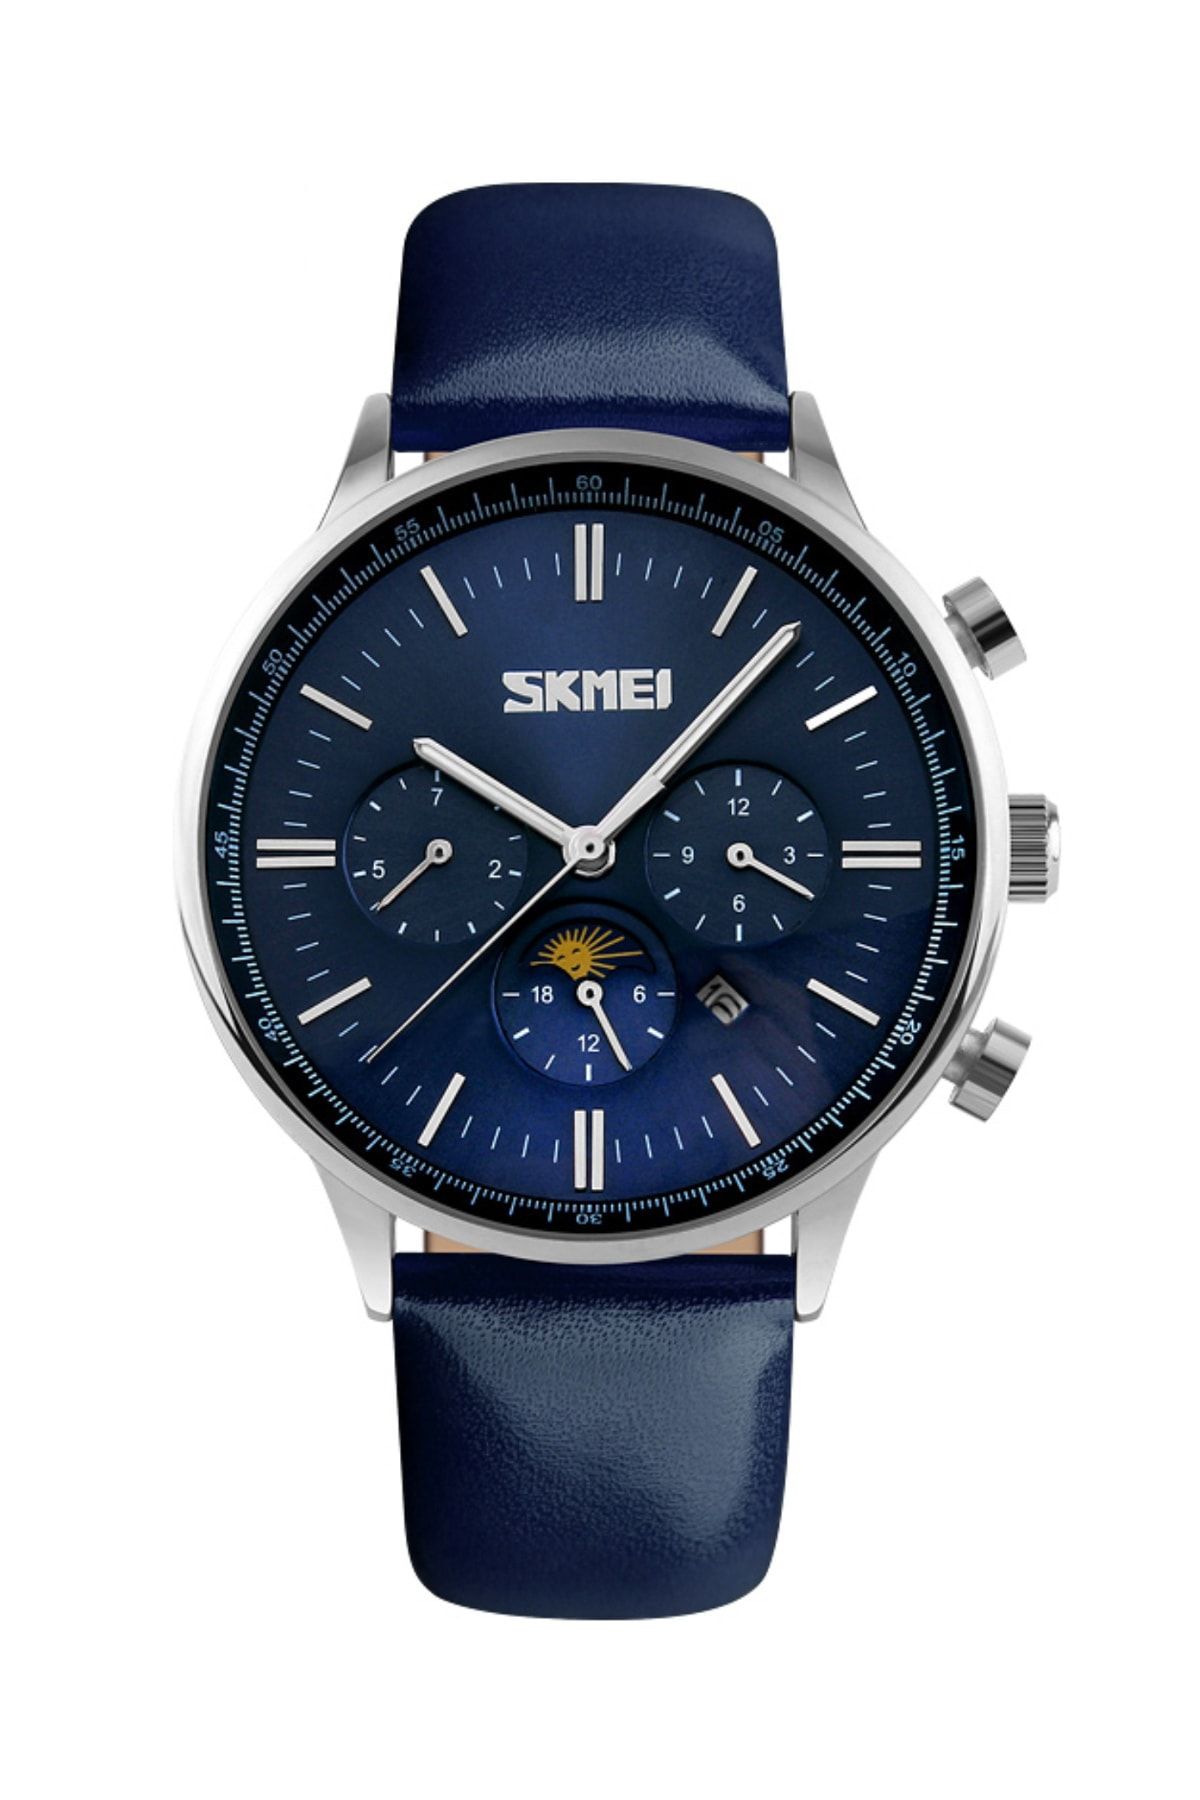 Skmei Mavi Tasarım Erkek Kol Saati Sade Spor Güçlü Tasarım Saat